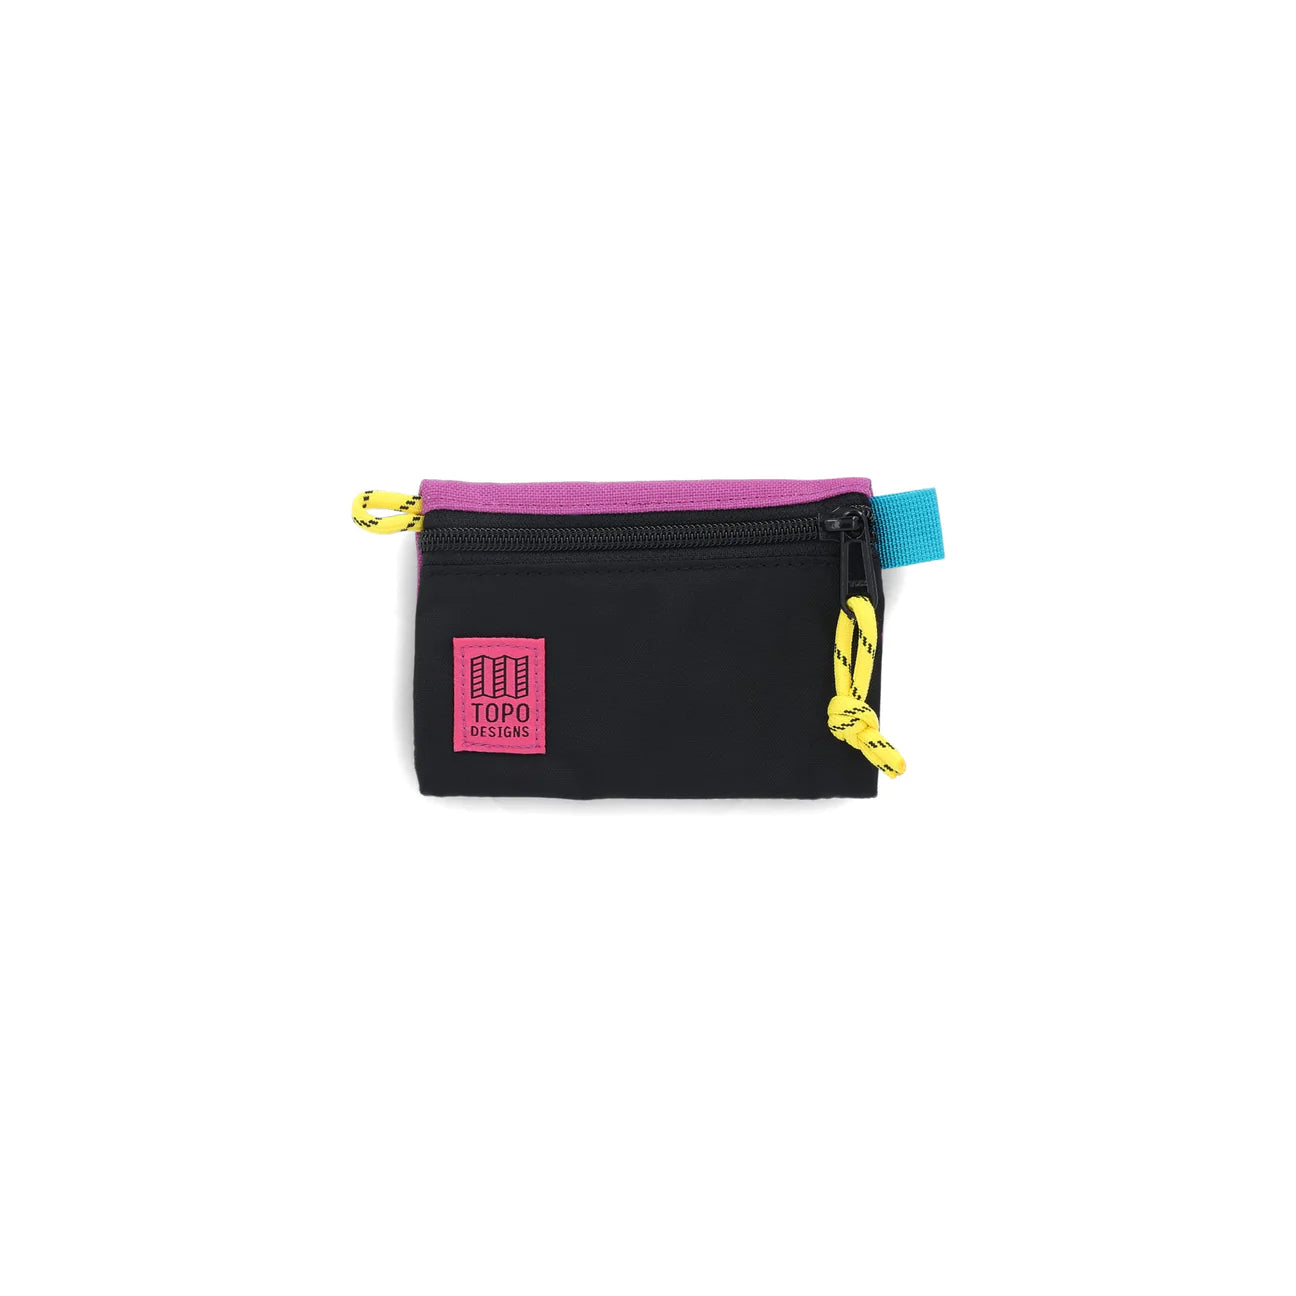 Topo Designs Accessory Bag Micro Kleintasche Topo Designs Black/Grape 